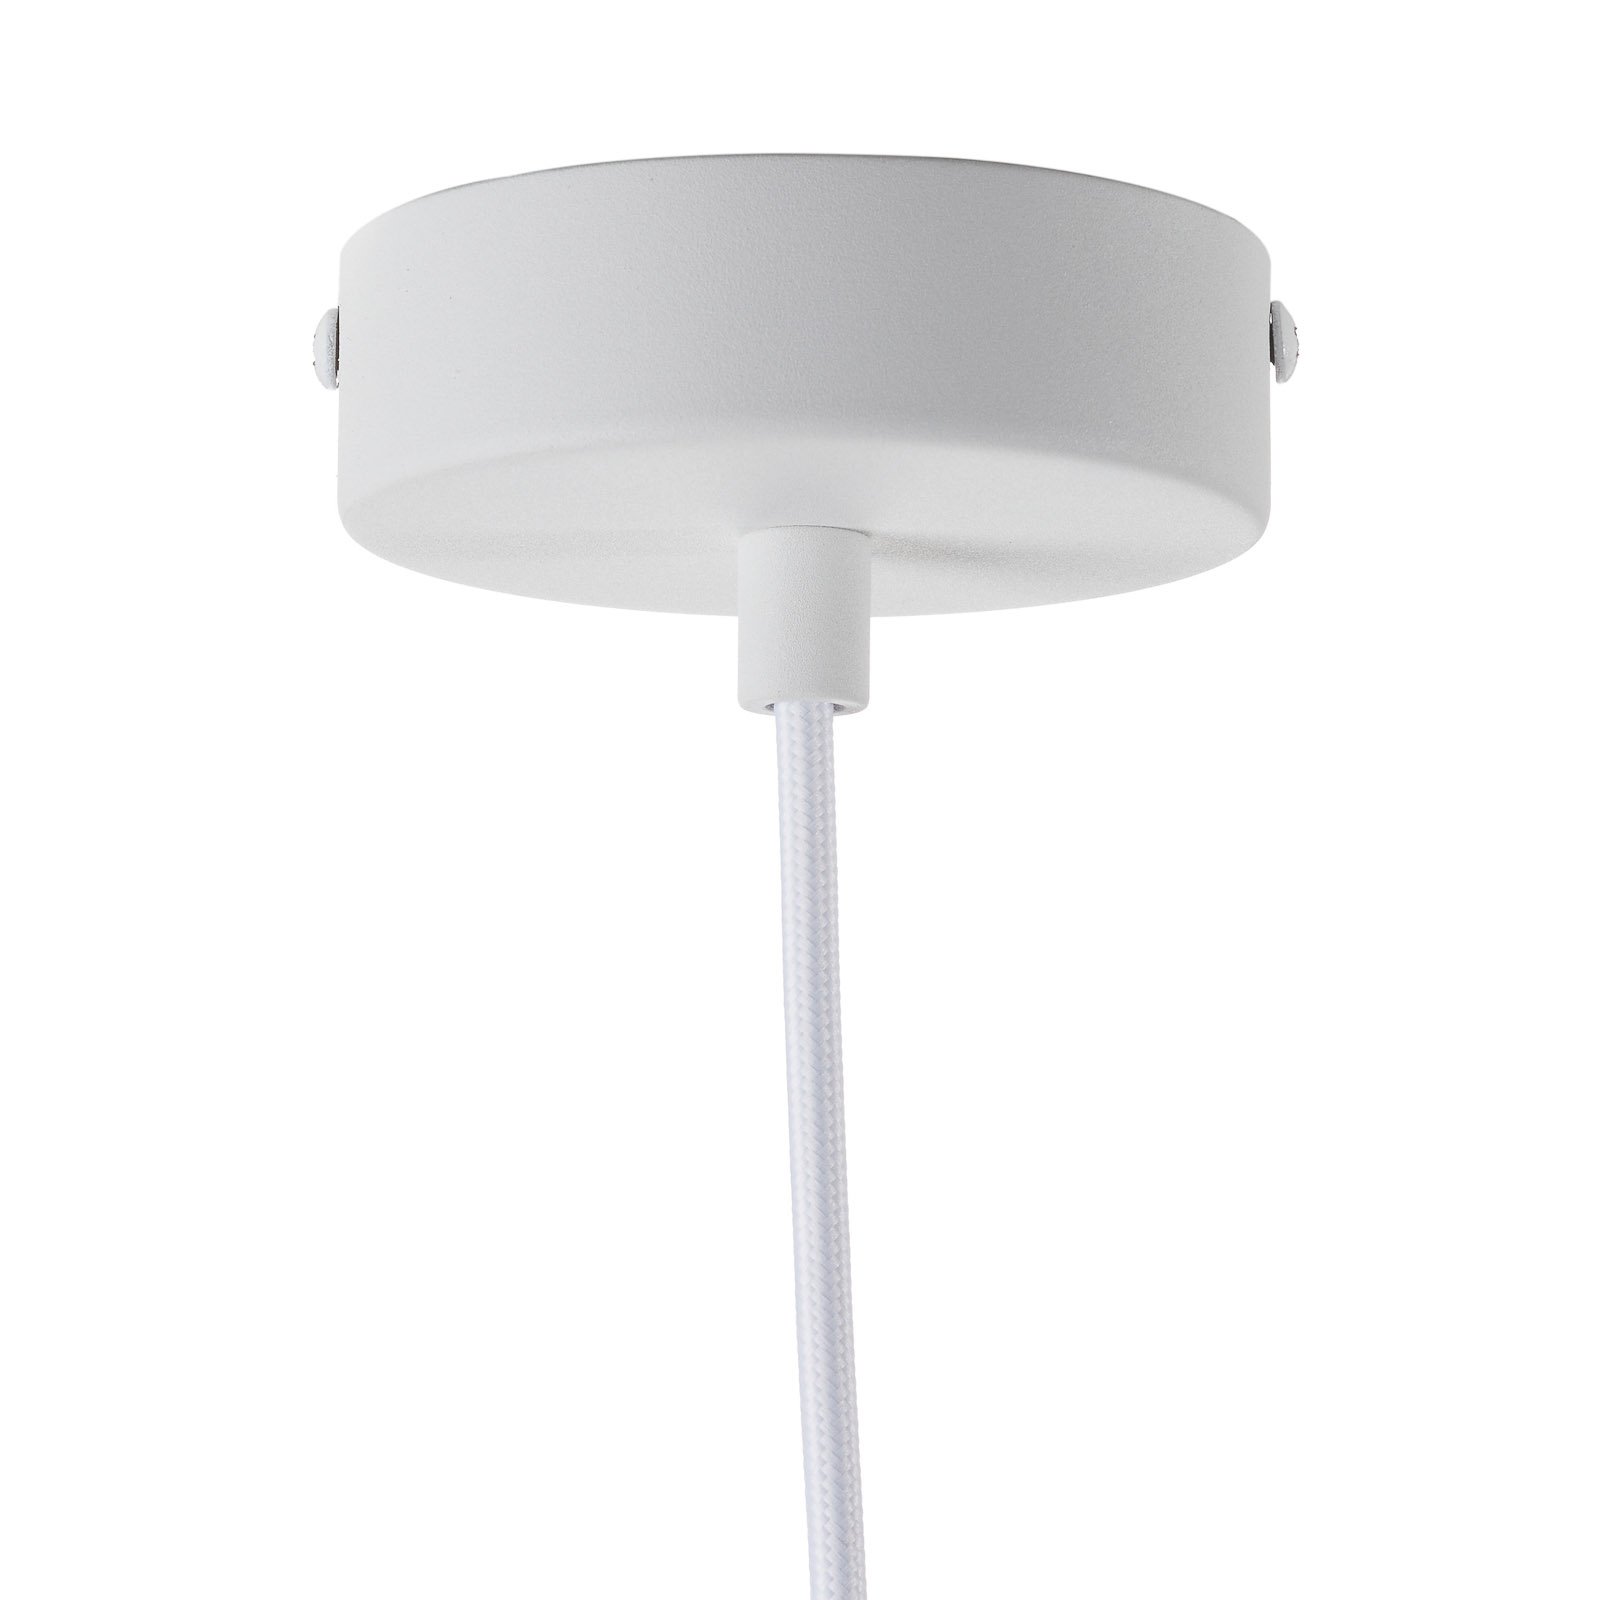 Forestier Oyster dizajnérska závesná lampa, biela